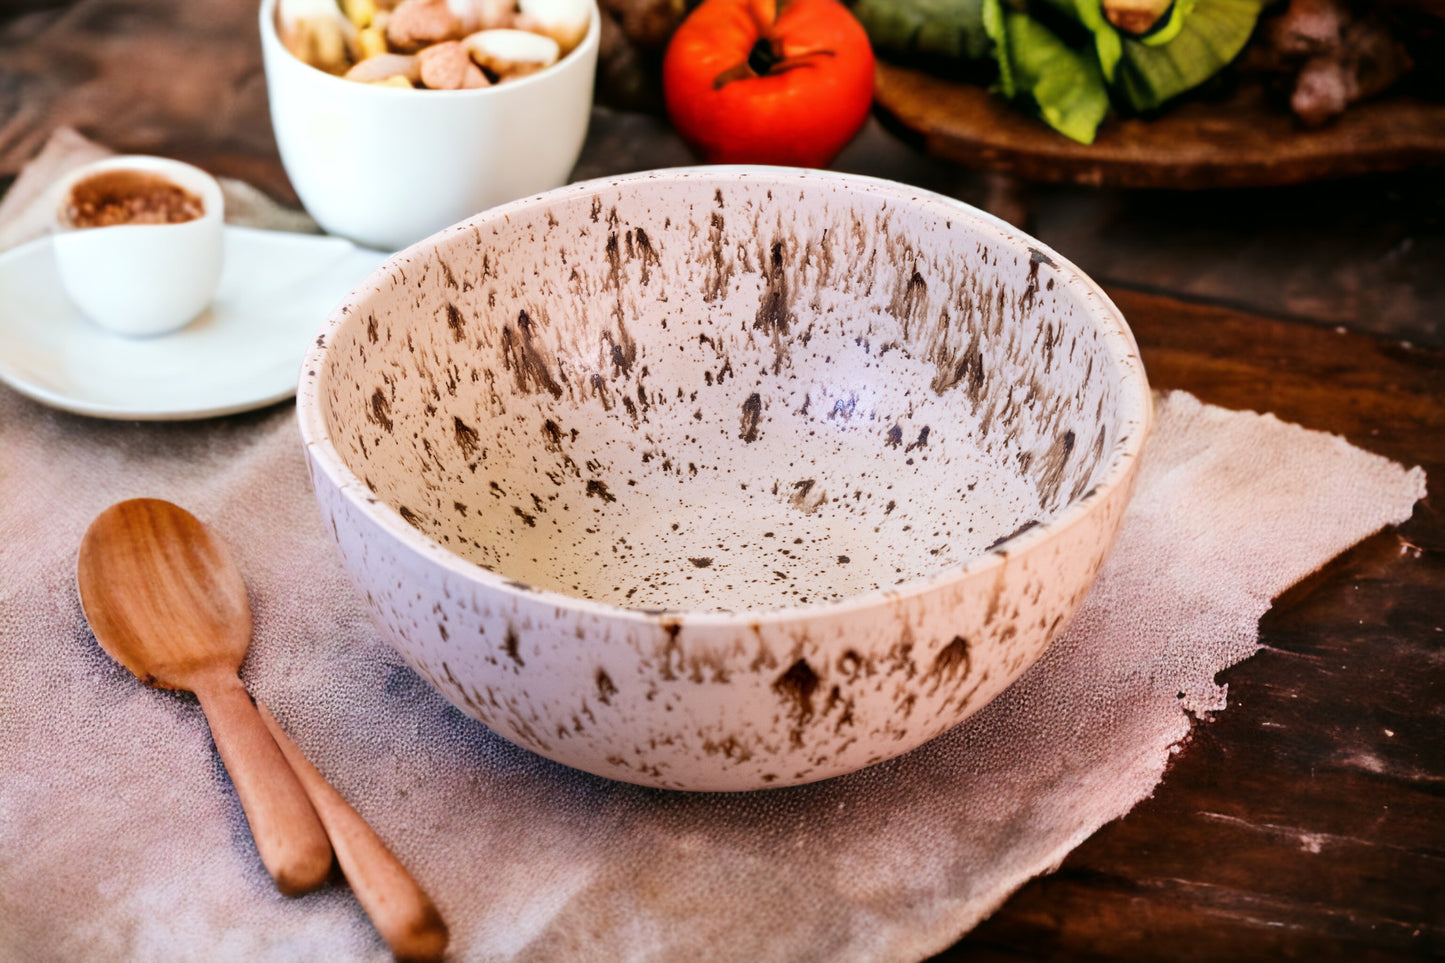 Unique ceramic bowl - Handmade by FeSendra